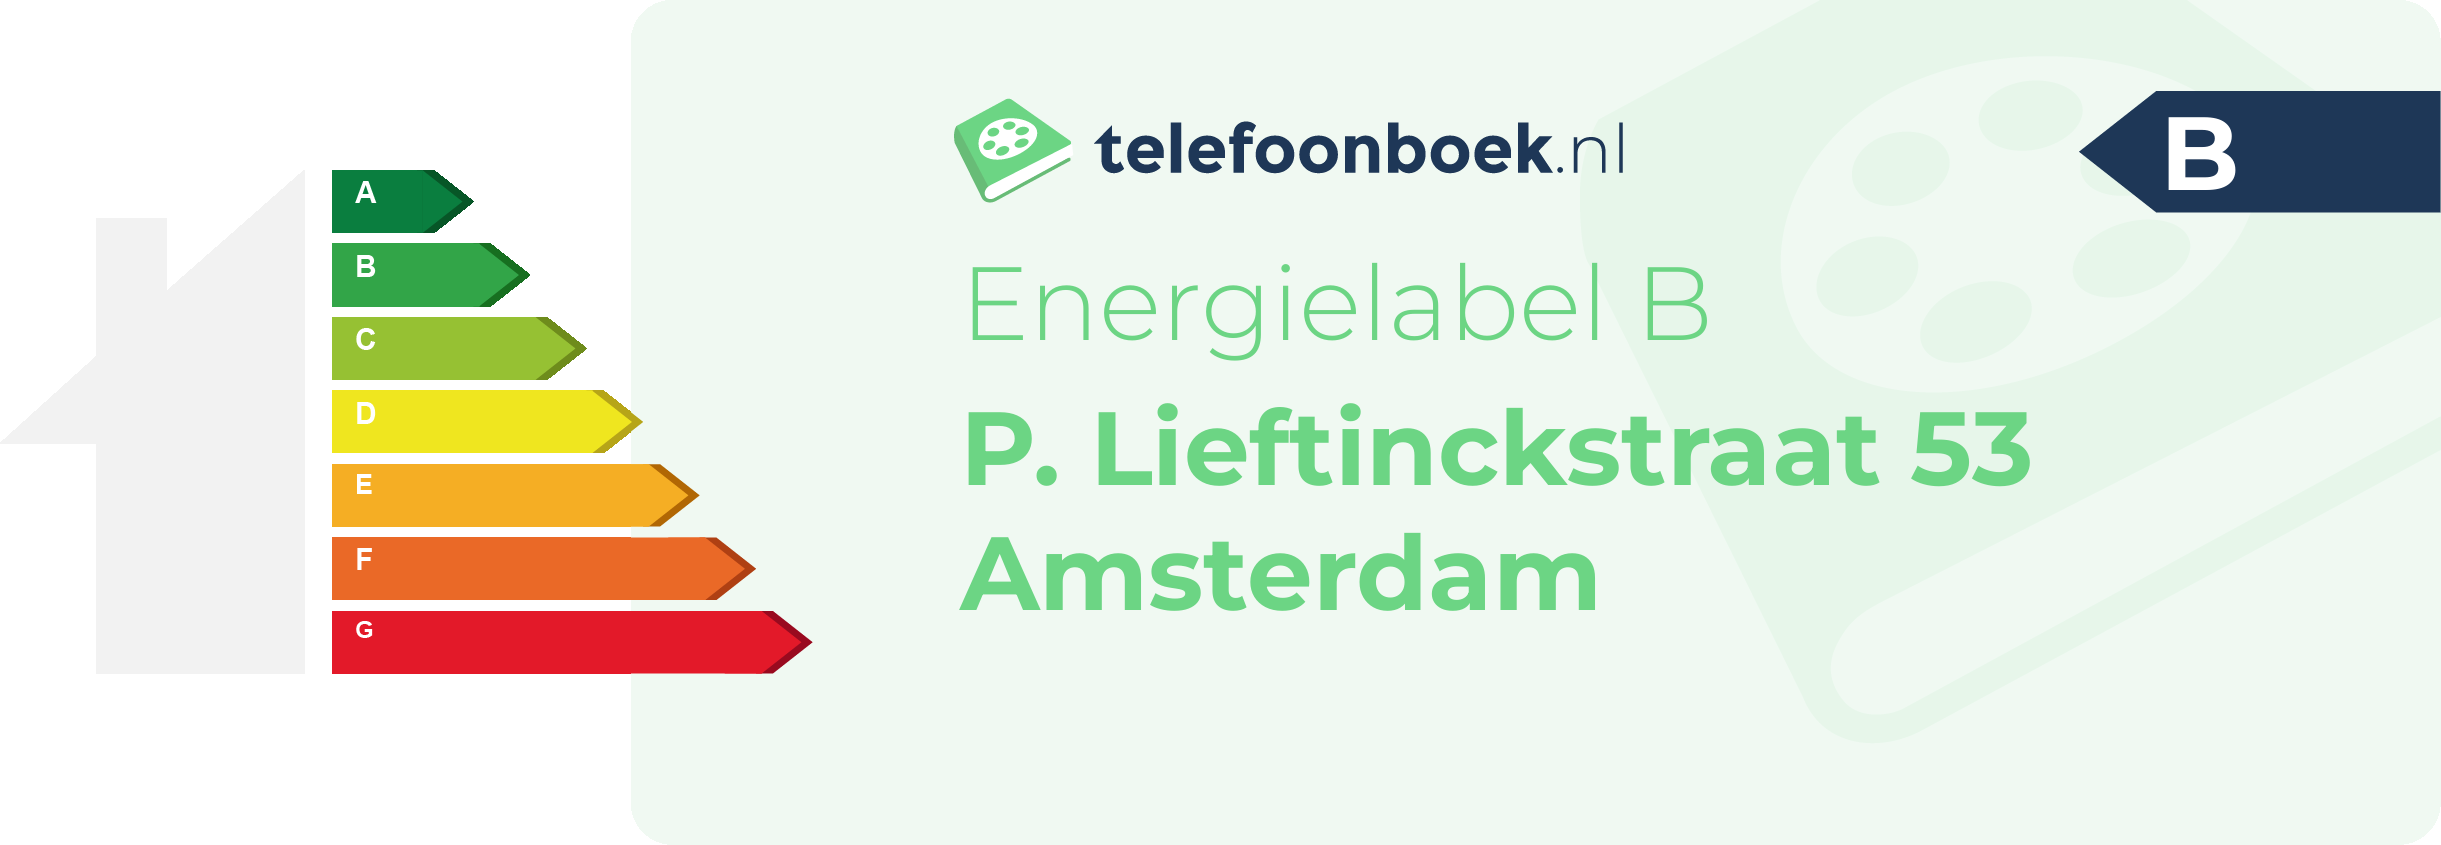 Energielabel P. Lieftinckstraat 53 Amsterdam